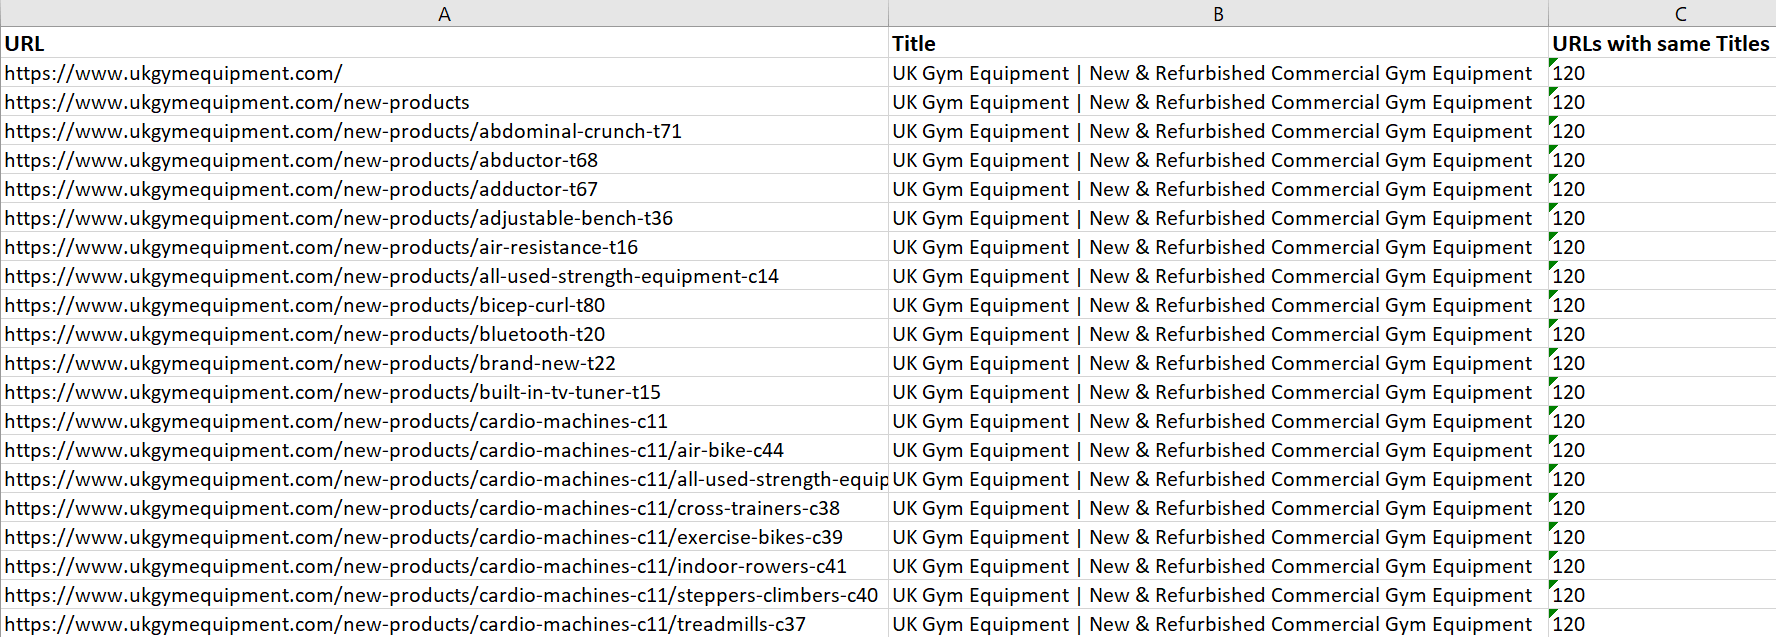 Excel export duplicate titles